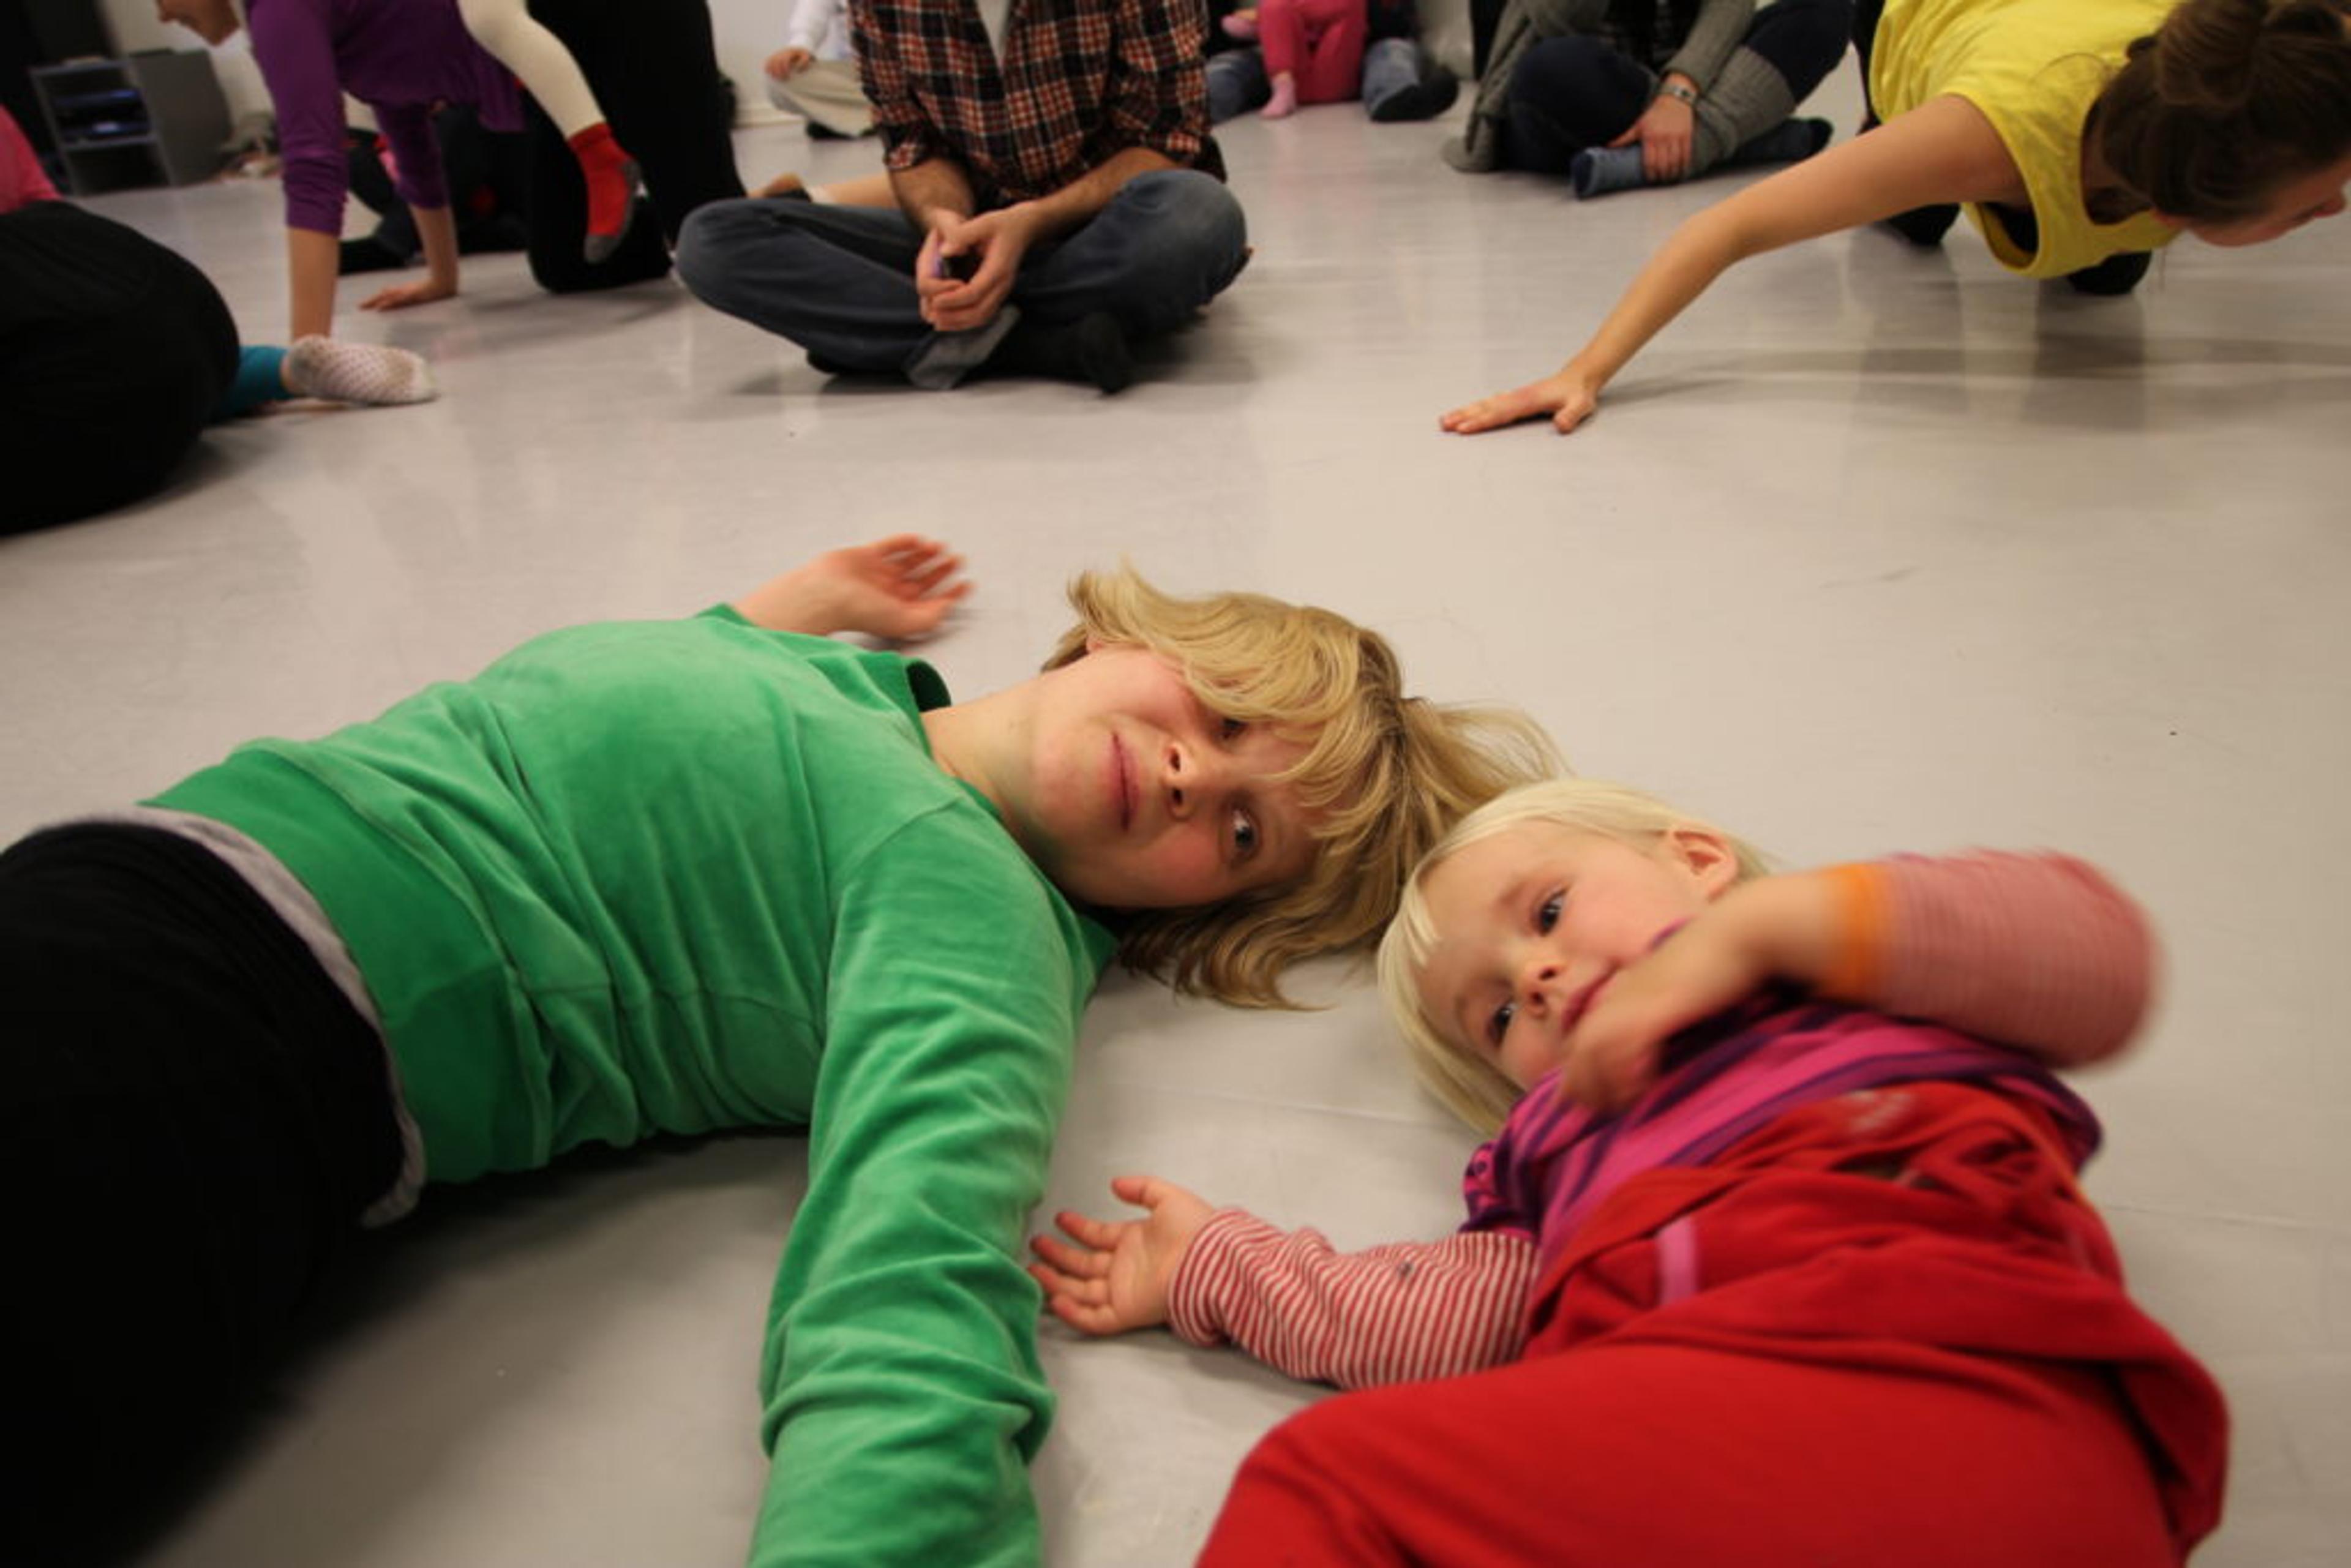 Et barn med grønn genser ligger på gulvet ved siden av et annet barn med rød genser.